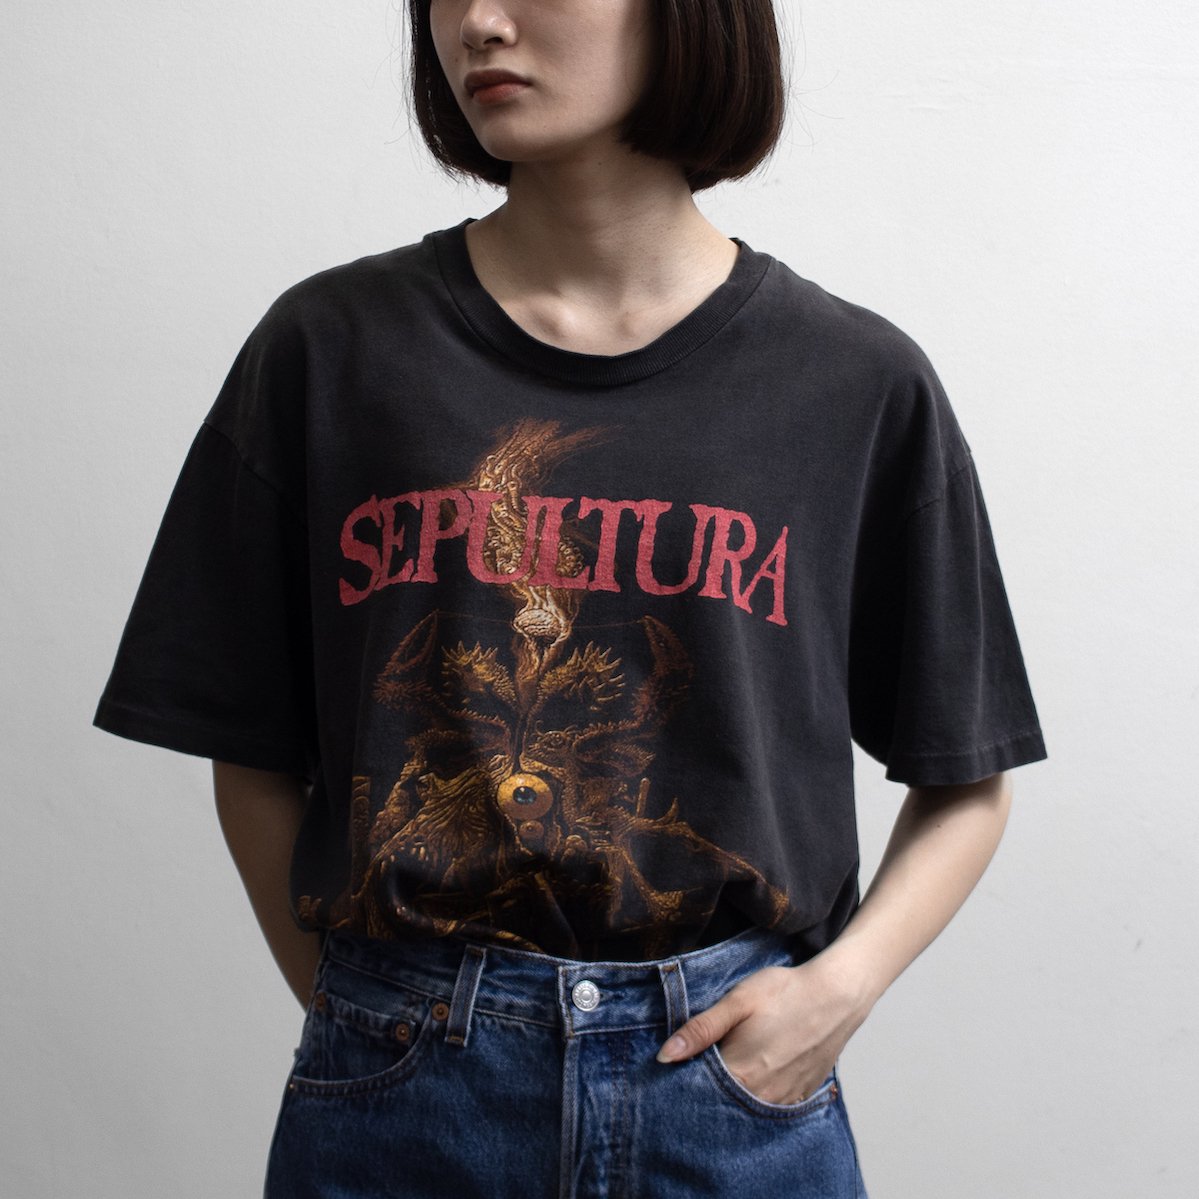 [レディース] 1990s ヴィンテージ SEPULTURA プリントTシャツ バンド すみ黒 6140-30